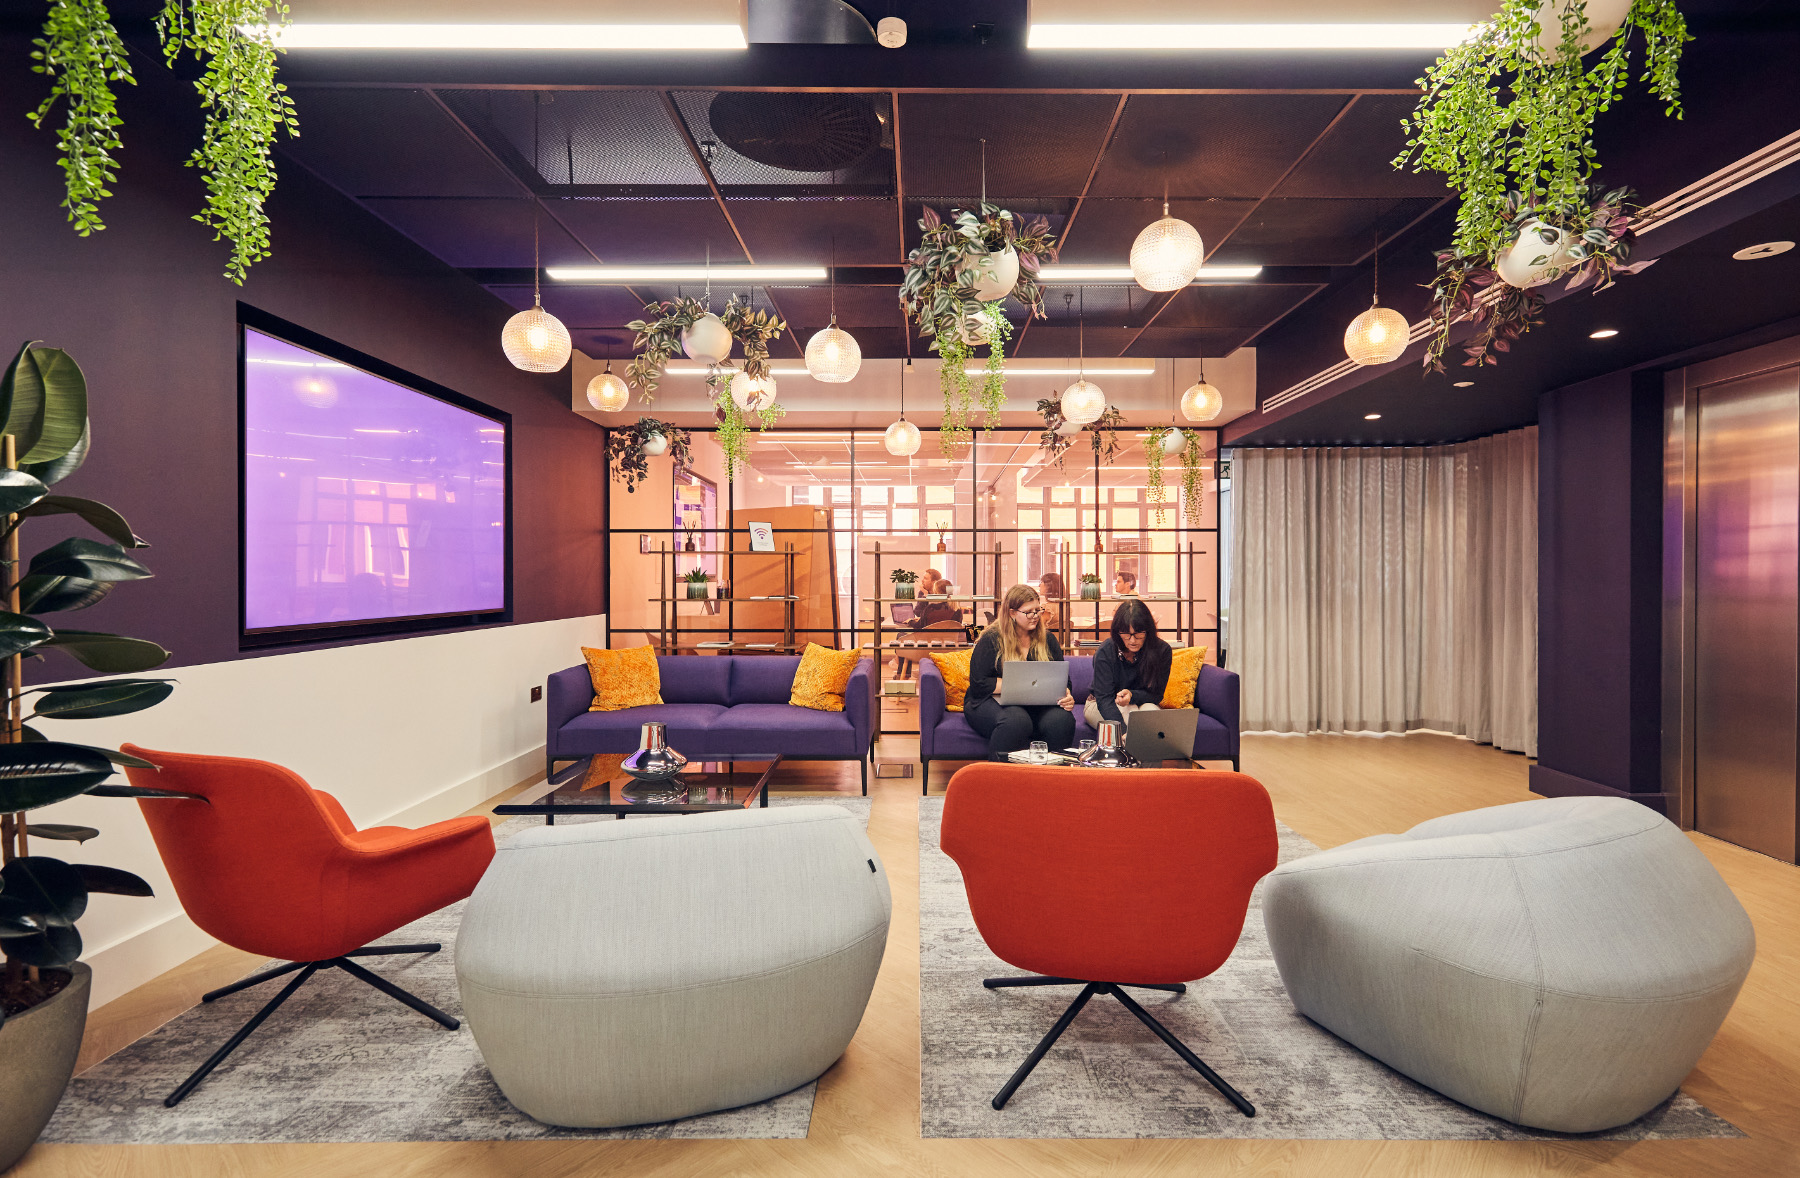 A Look Inside Brandpie’s New London Office